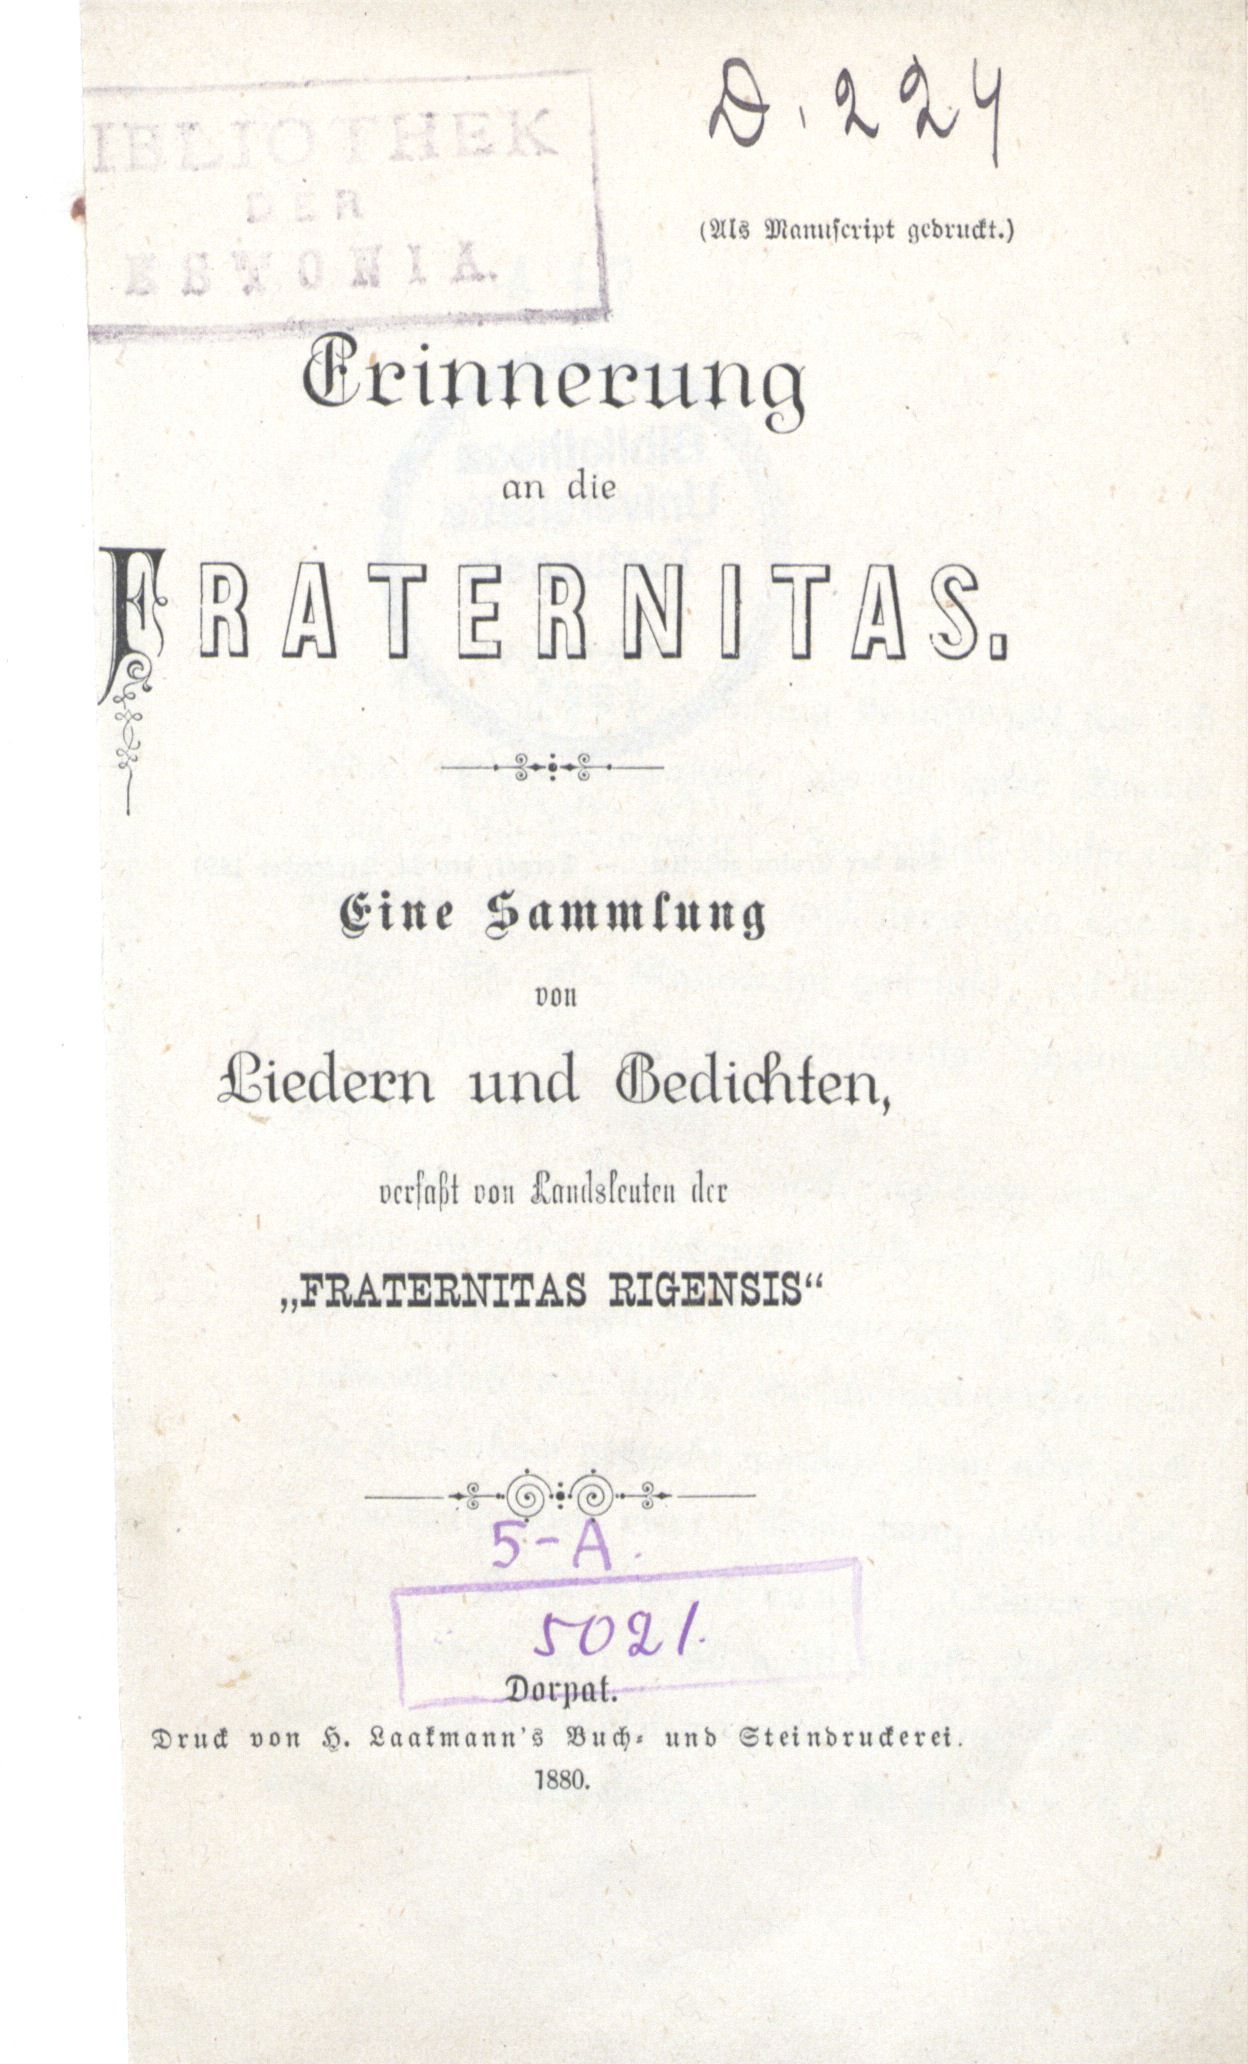 Erinnerung an die Fraternitas (1880) | 3. Титульный лист